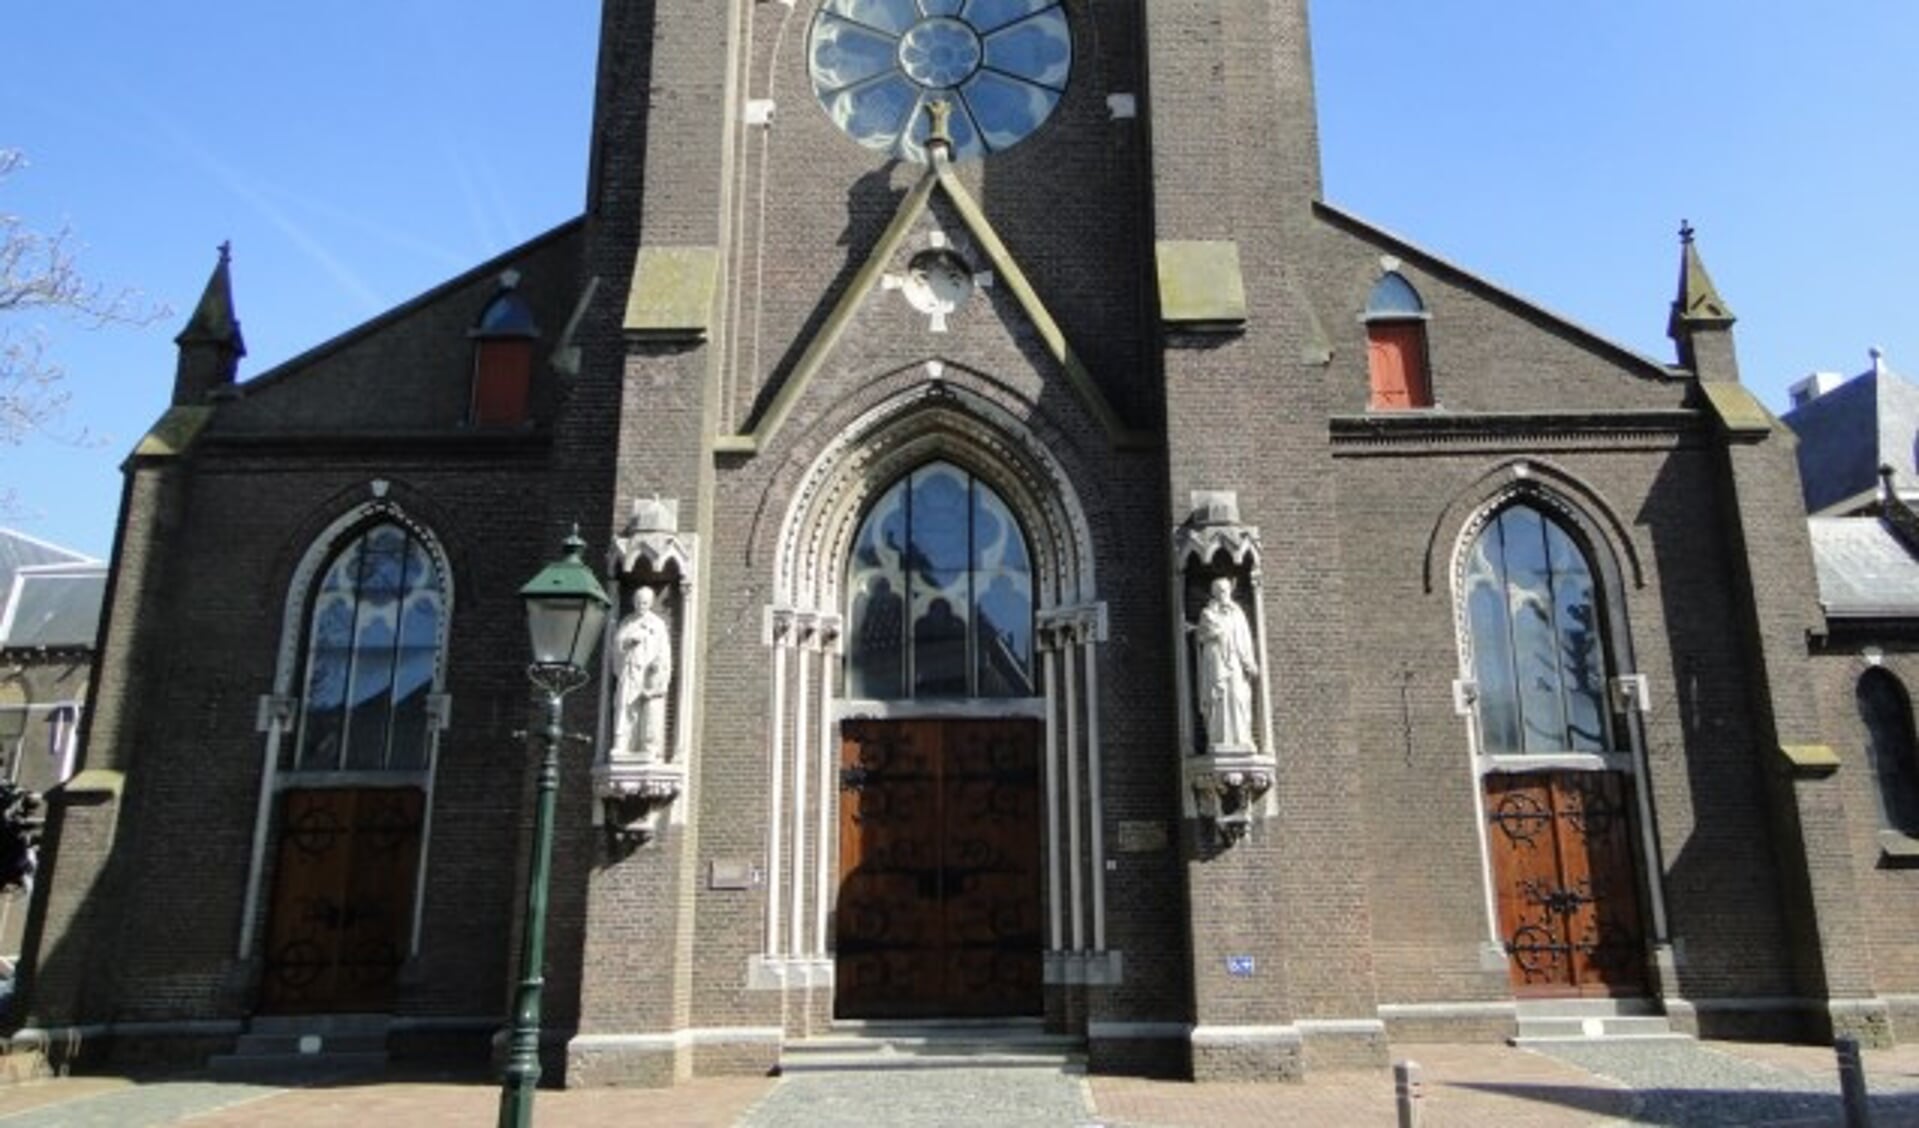 De Sint Franciscuskerk in Oudewater is een rijksmonument. Al 25 jaar zet de stichting zich in voor het behoud ervan. (Foto: Margreet Nagtegaal)